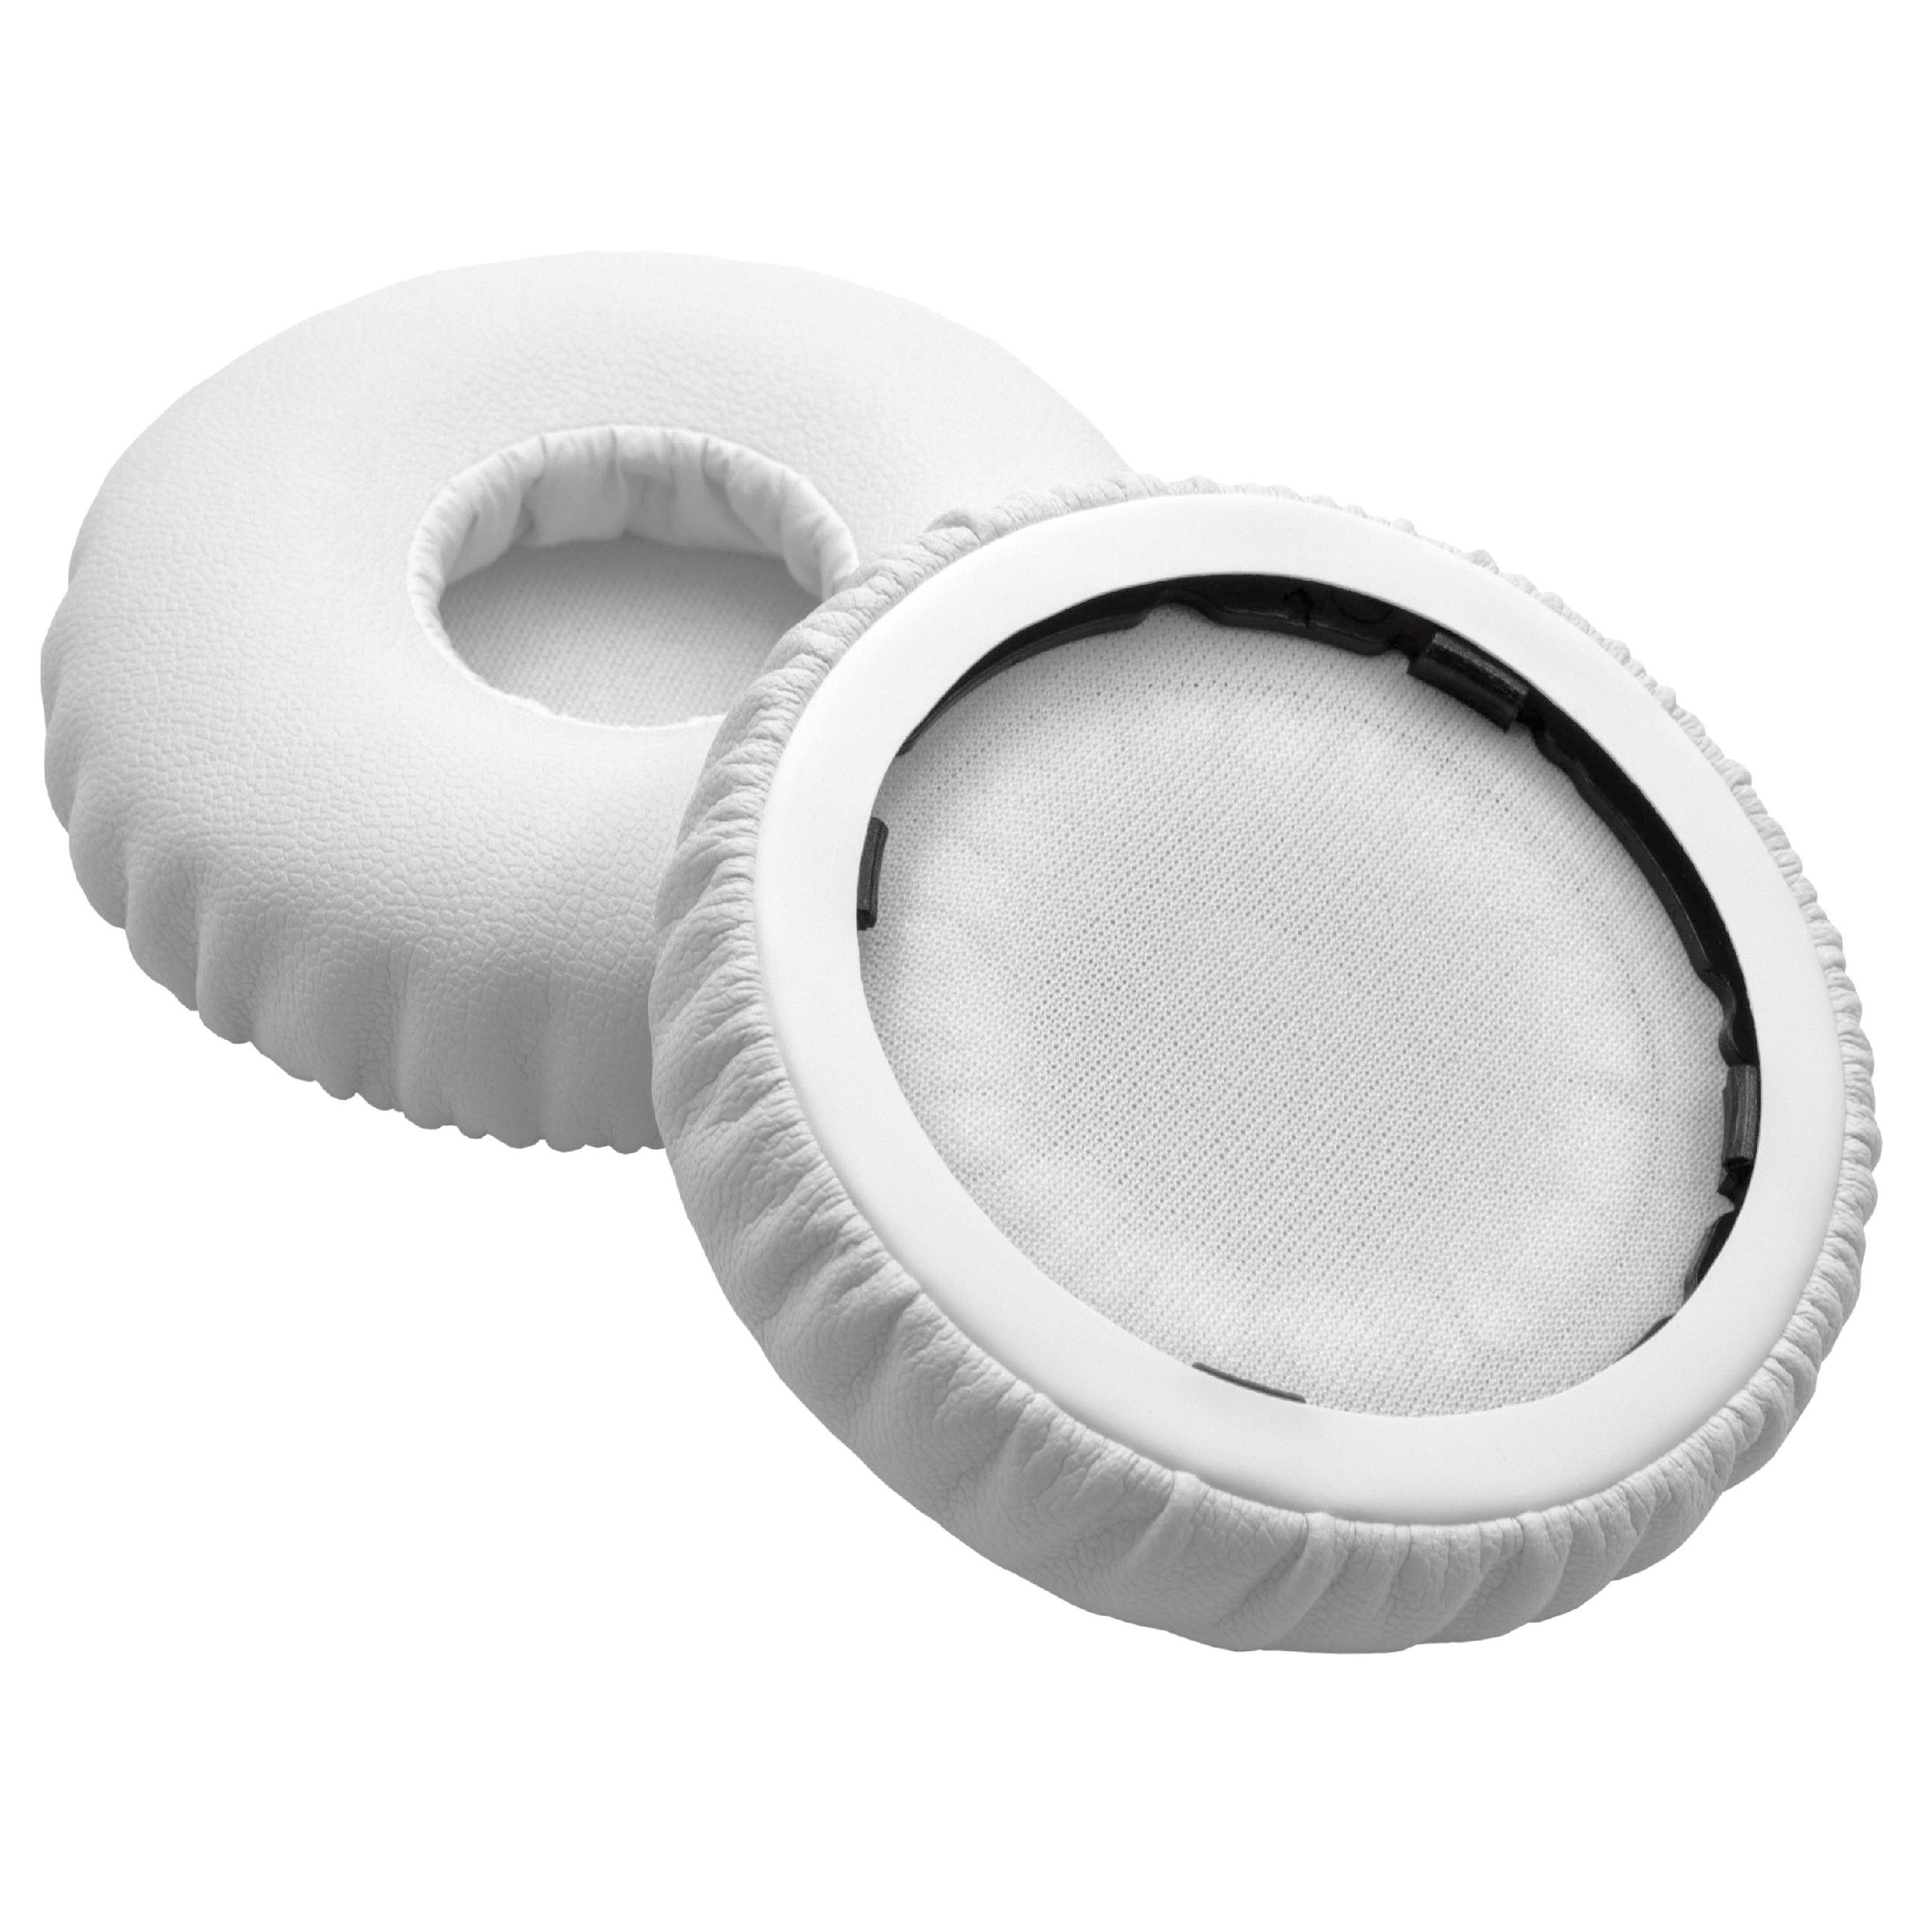 2x Poduszki do słuchawek Solo - pady śr. 6,6 cm , grub. 14 mm, biały